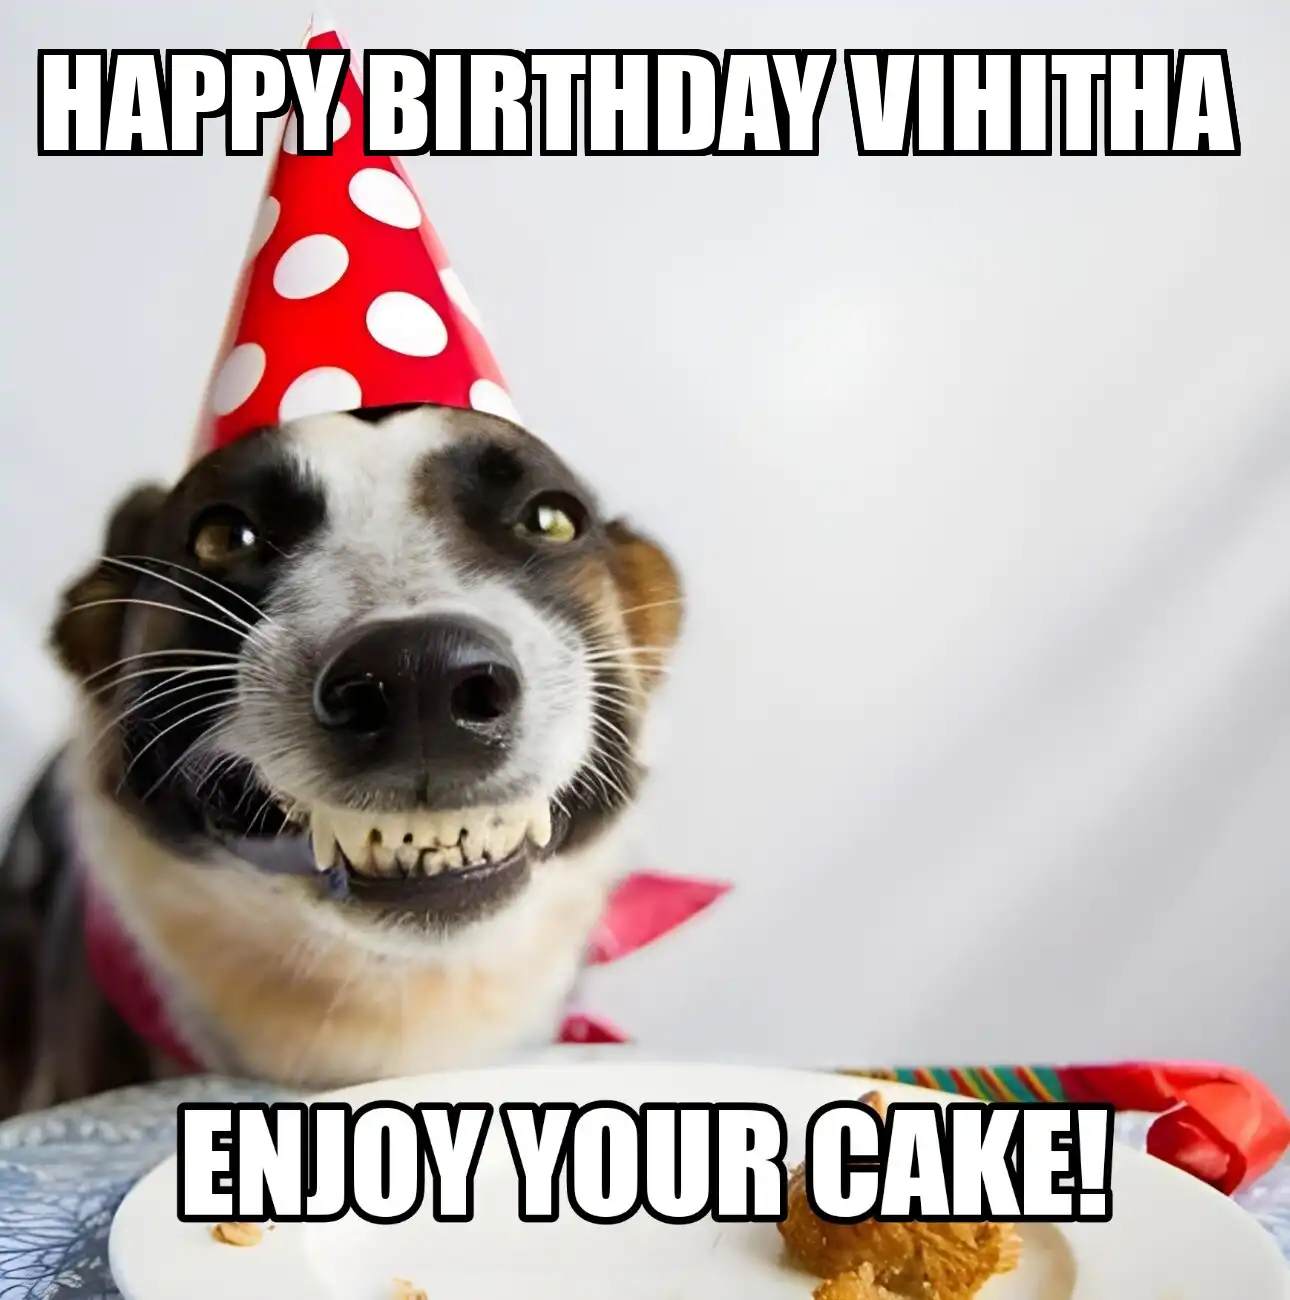 Happy Birthday Vihitha Enjoy Your Cake Dog Meme